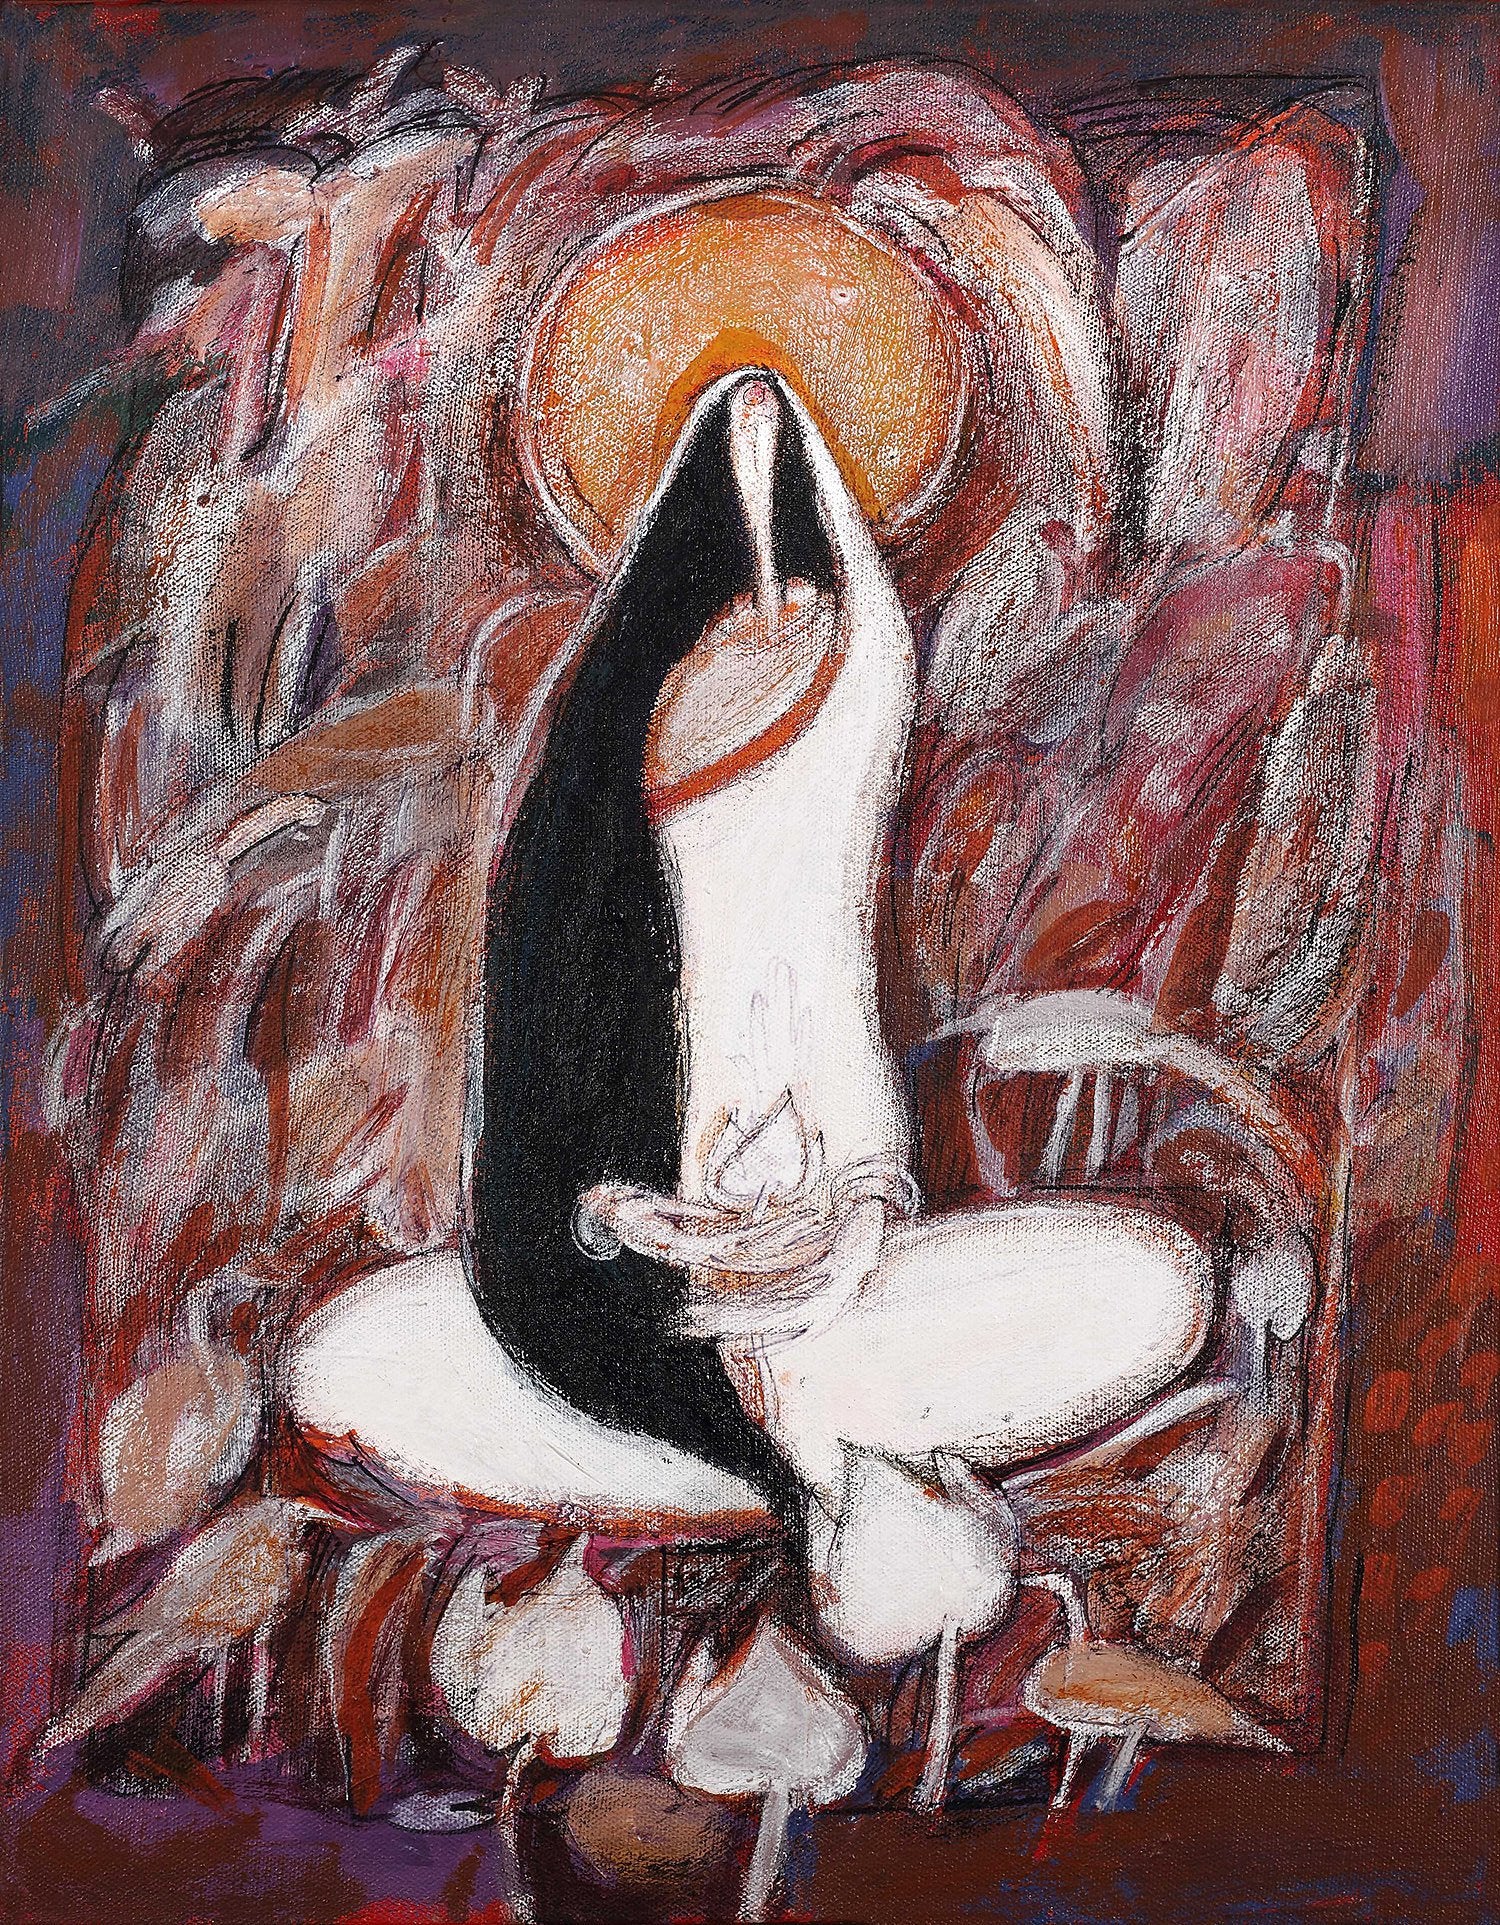 Meditation|Dhiraj Choudhury- Acrylic on canvas, 2016, 18 x 14 inches